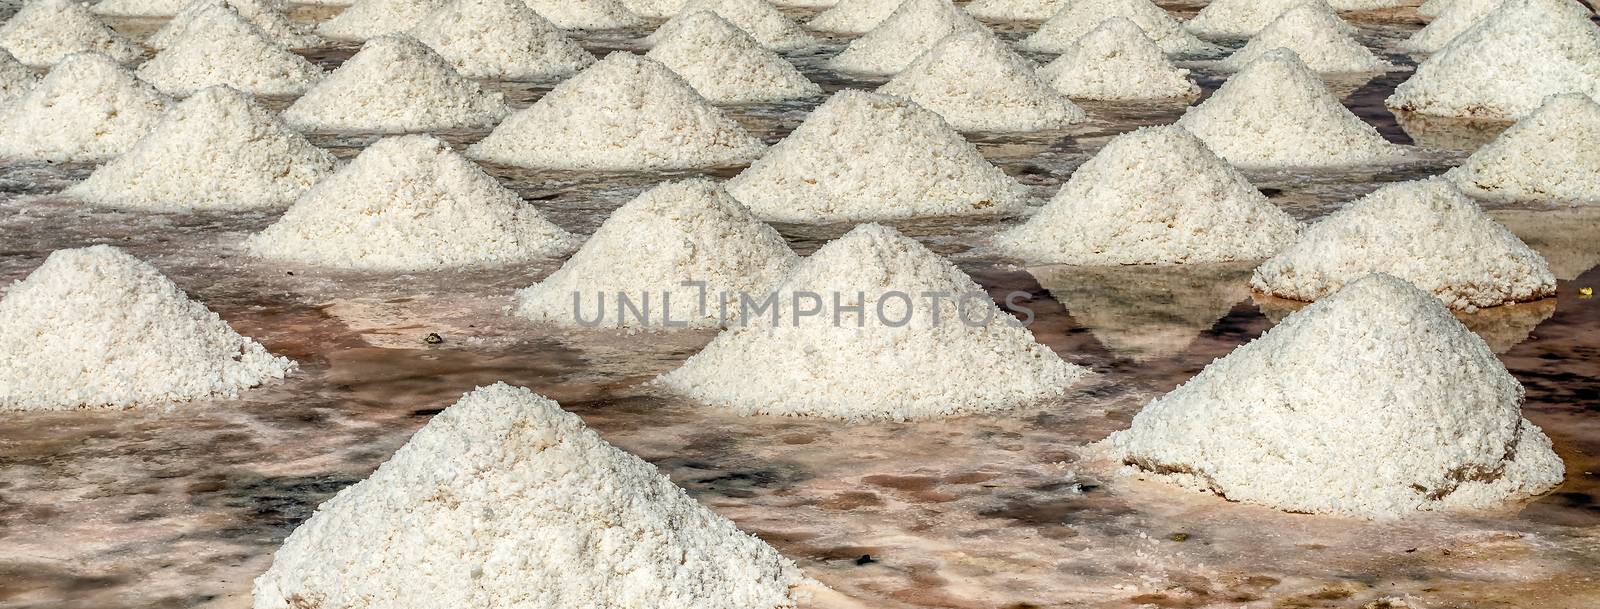 The scenic salt flats of Motya near Trapani, Sicily, Italy